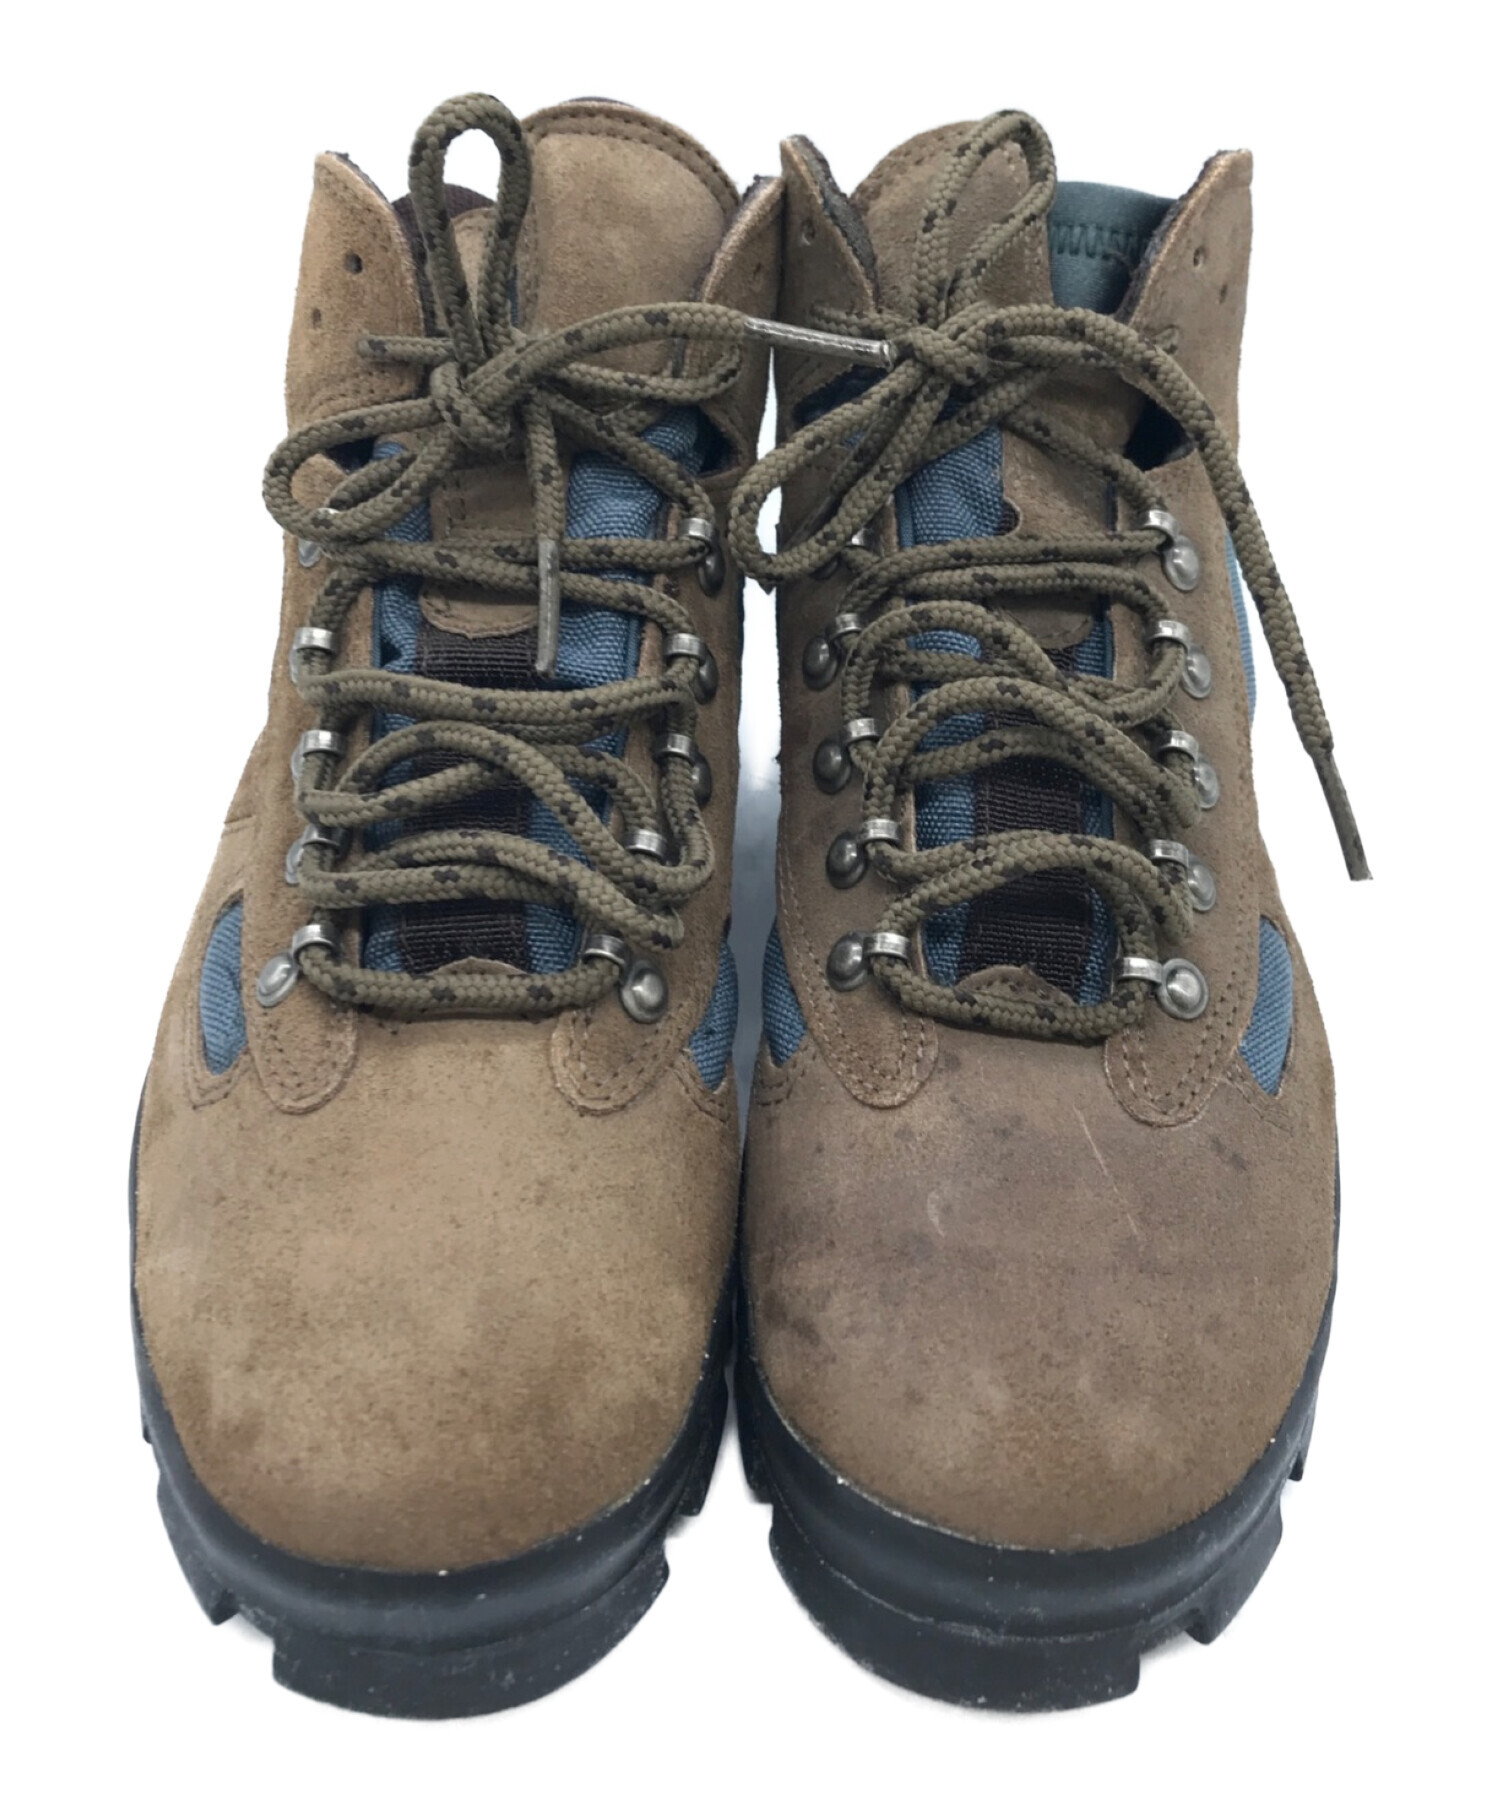 NIKE ACG (ナイキエージーシー) Air Hiking Boots ブラウン サイズ:24